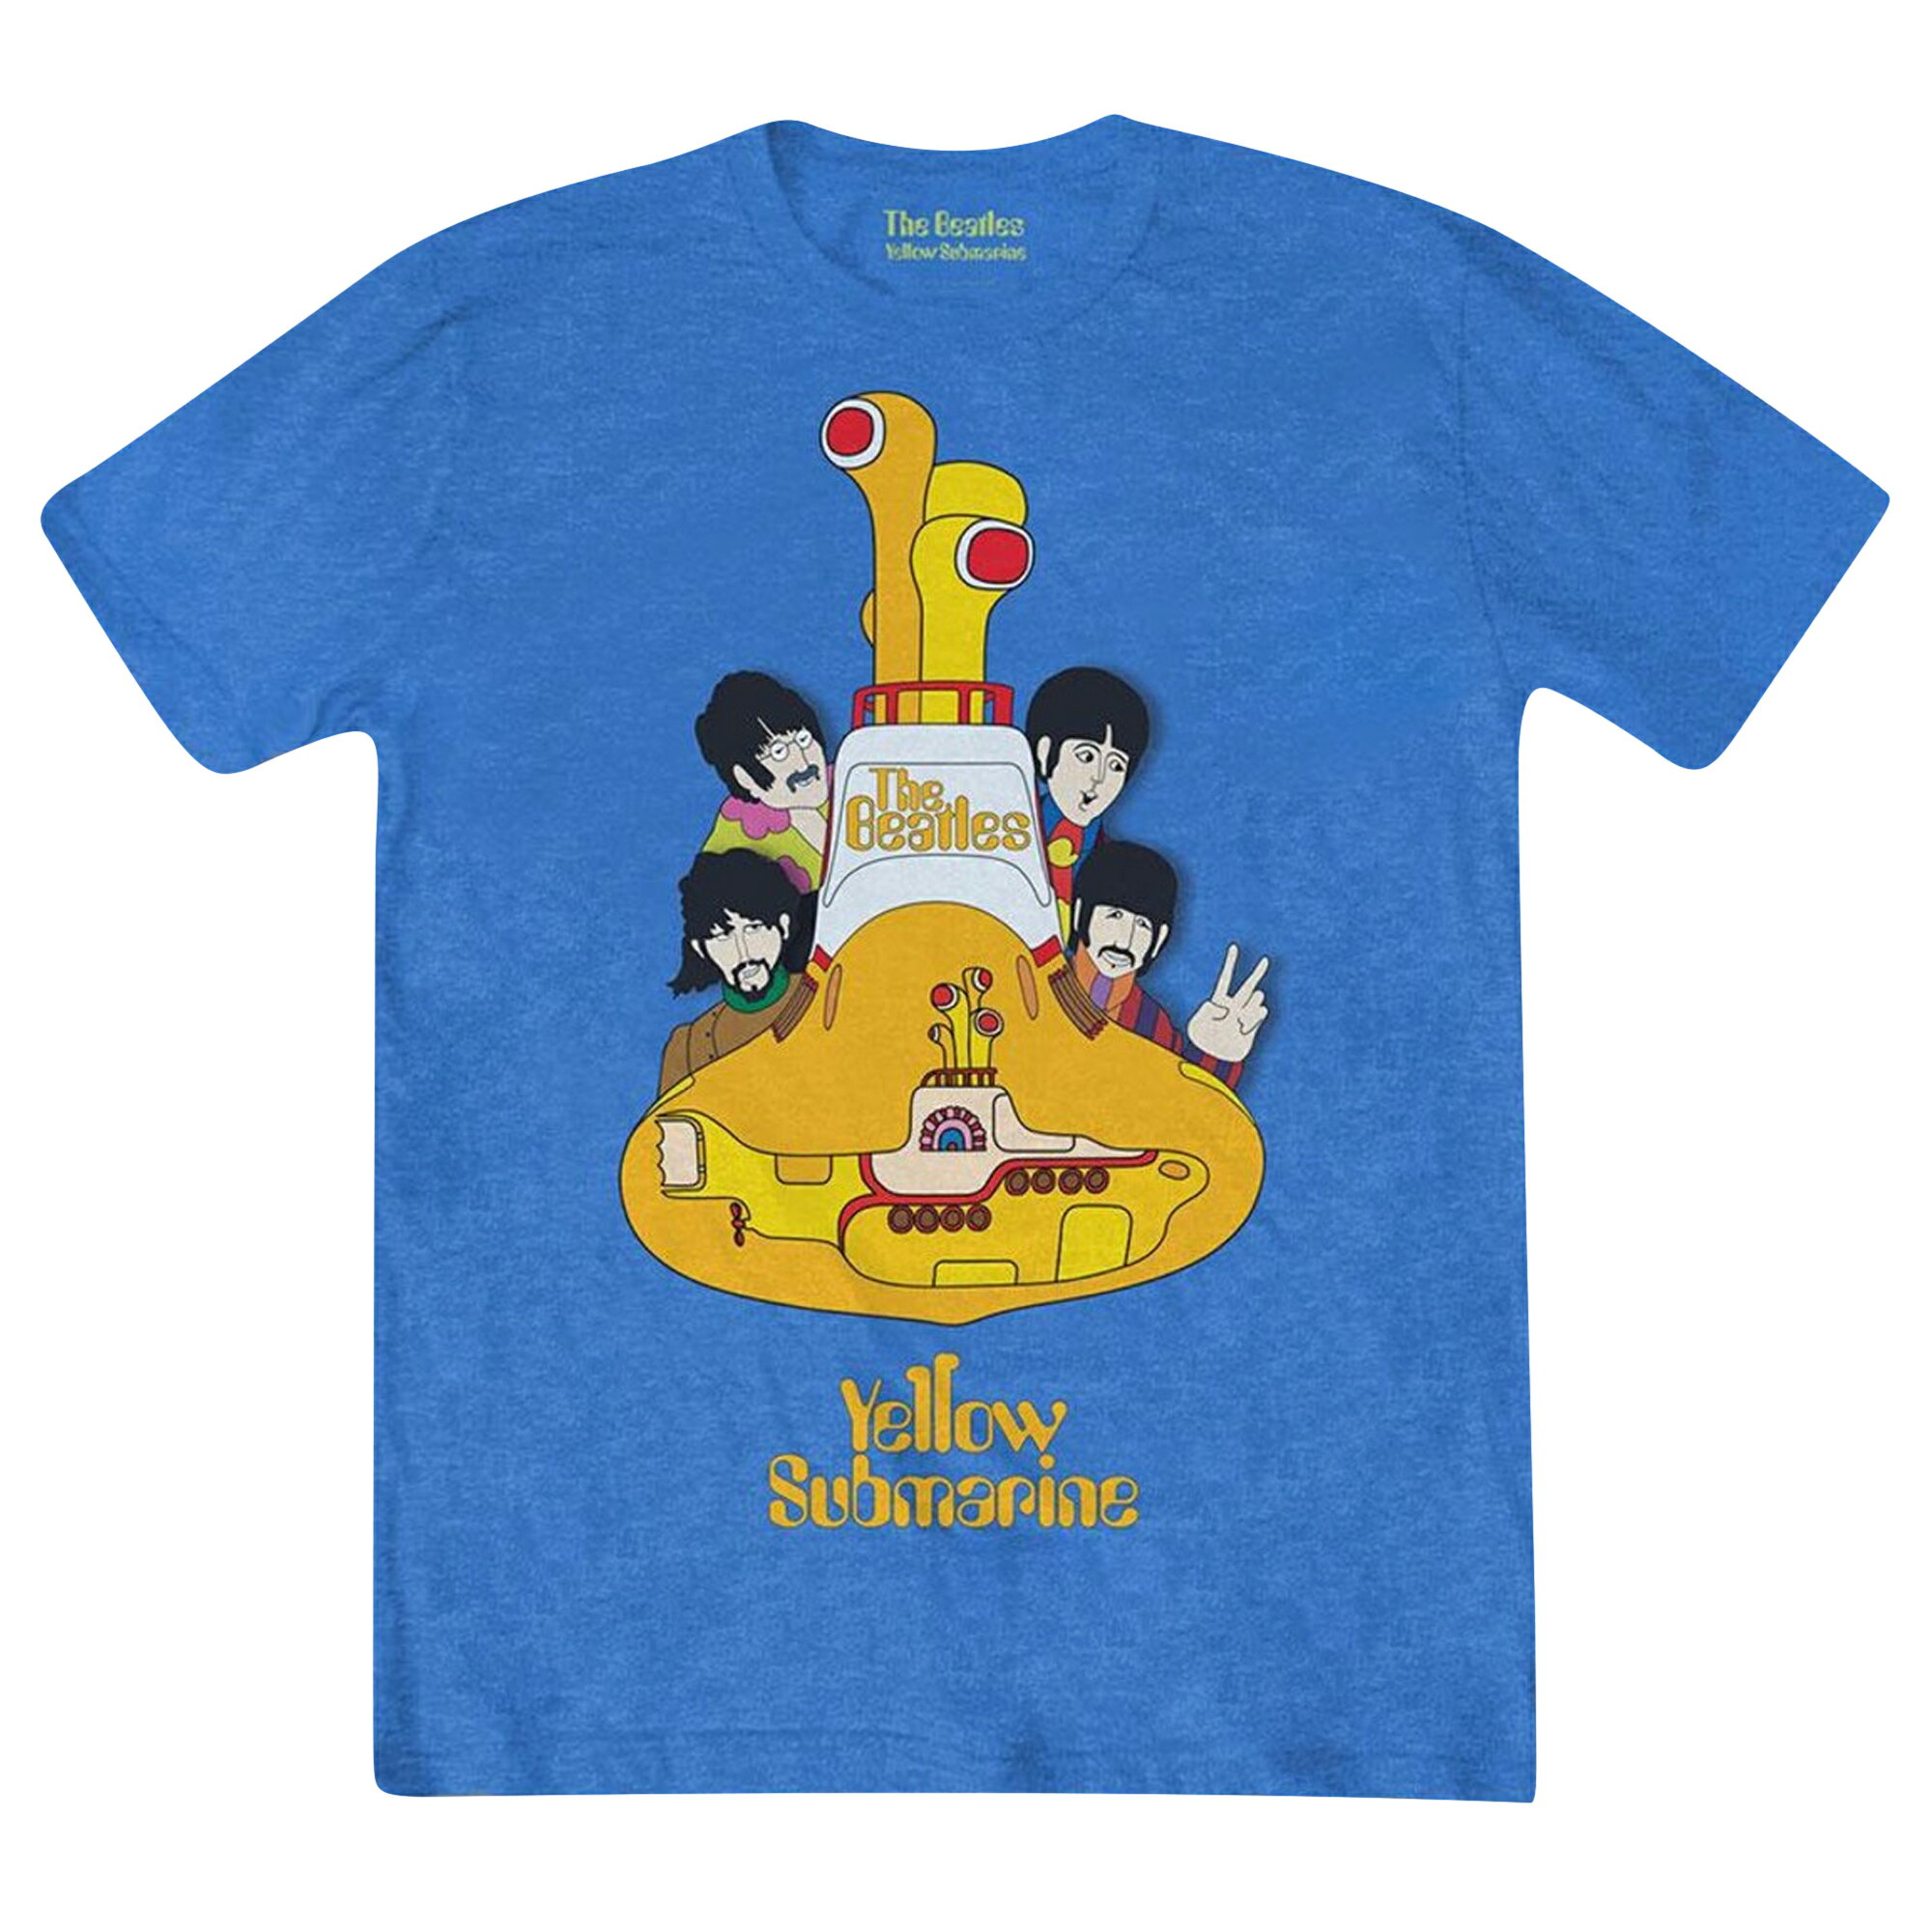 (ビートルズ) The Beatles オフィシャル商品 ユニセックス Yellow Submarine Sub Tシャツ 半袖 トップス 【海外通販】